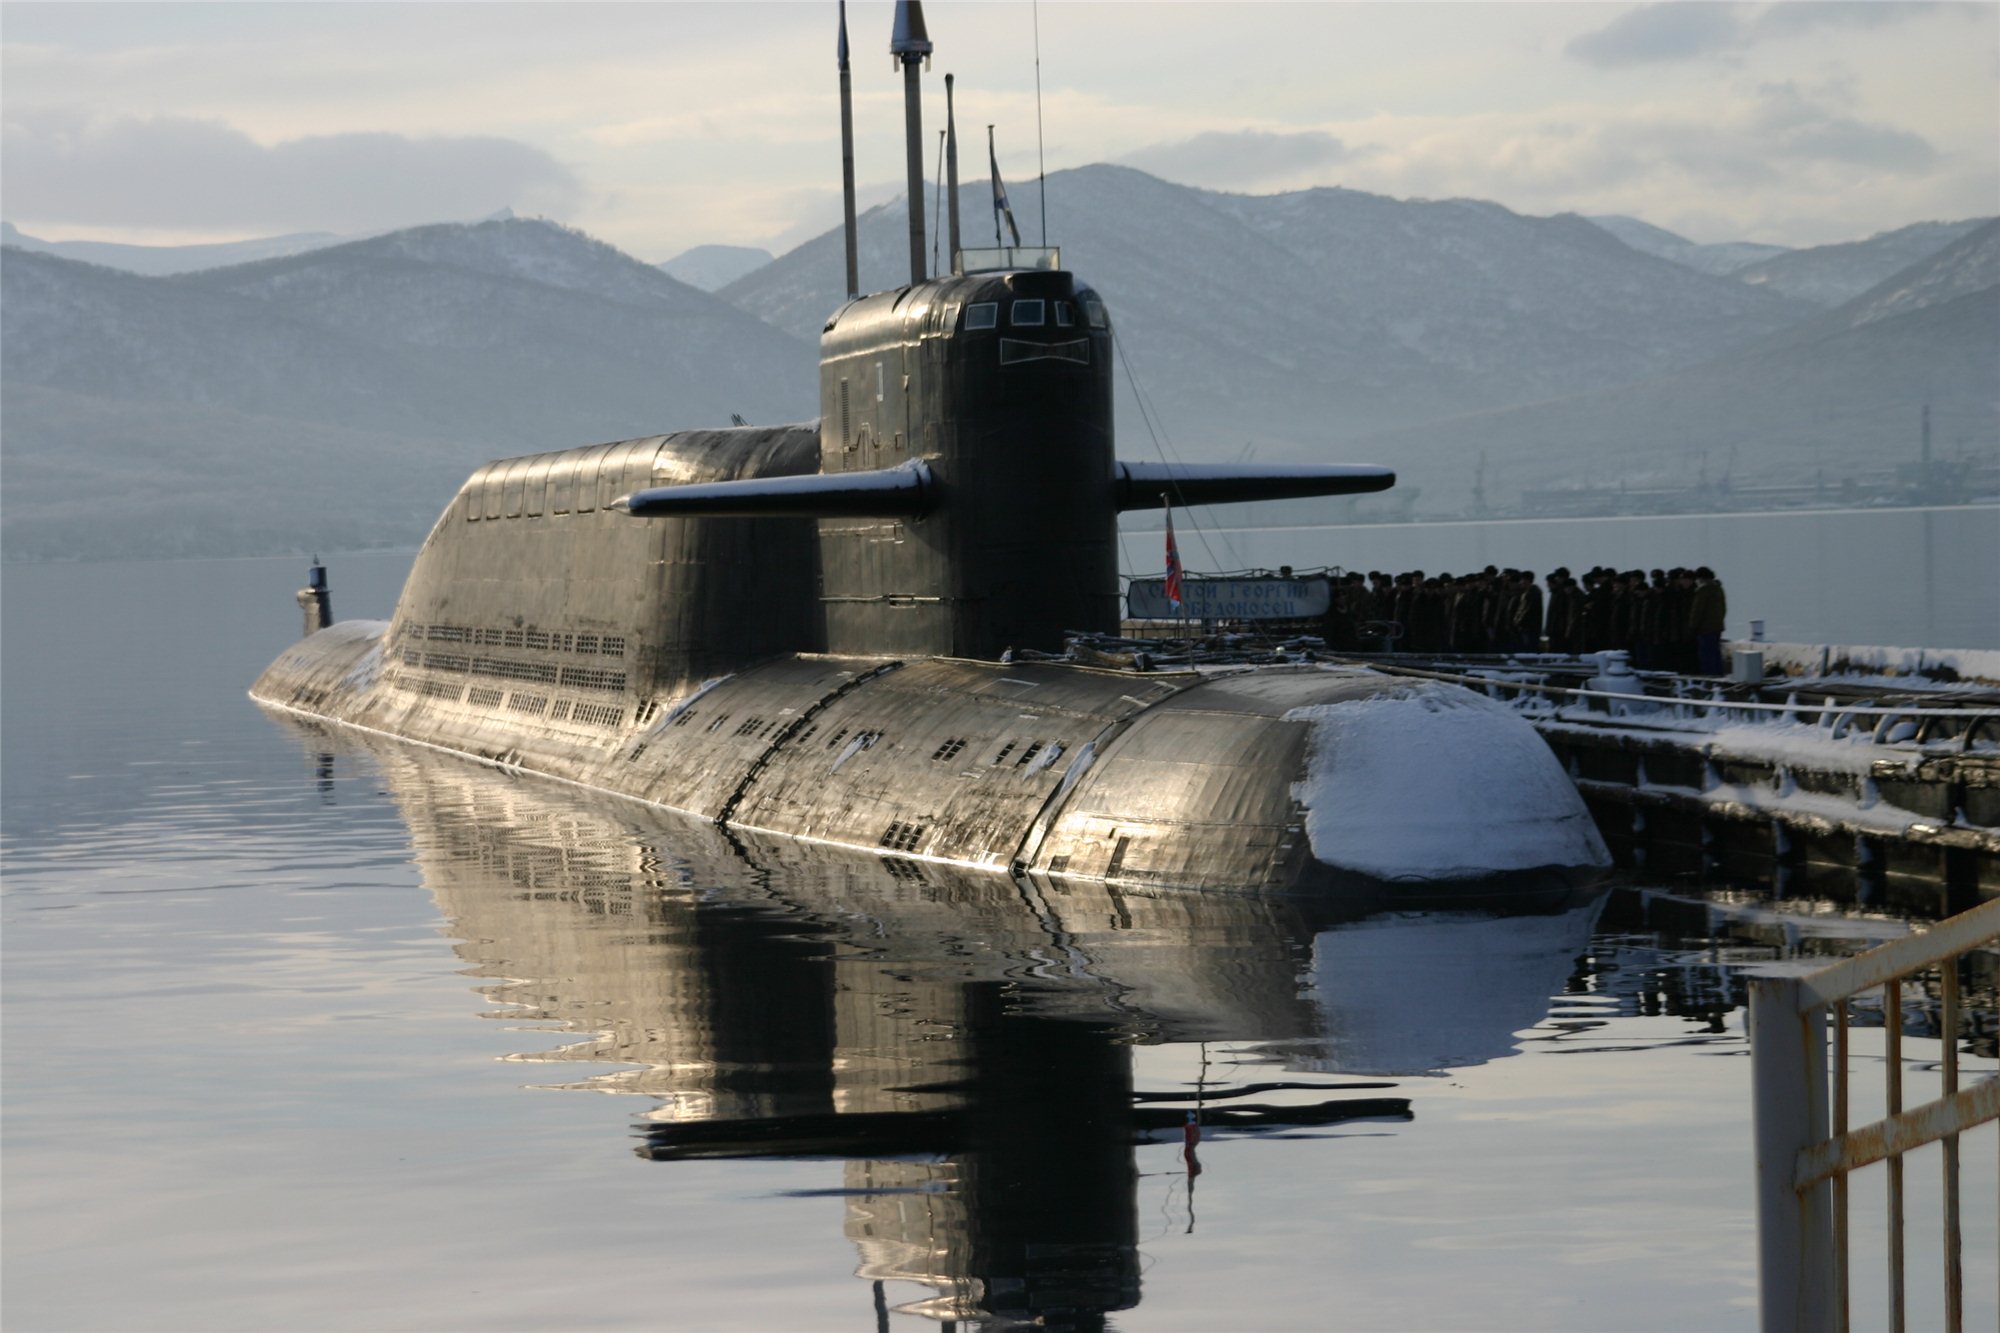 Пл ка. Подводная лодка 667бдр кальмар. Подводные лодки проекта 667бдр «кальмар». Подводные лодки проекта 667бдрм «Дельфин». БДРМ 667 проект подводная лодка.